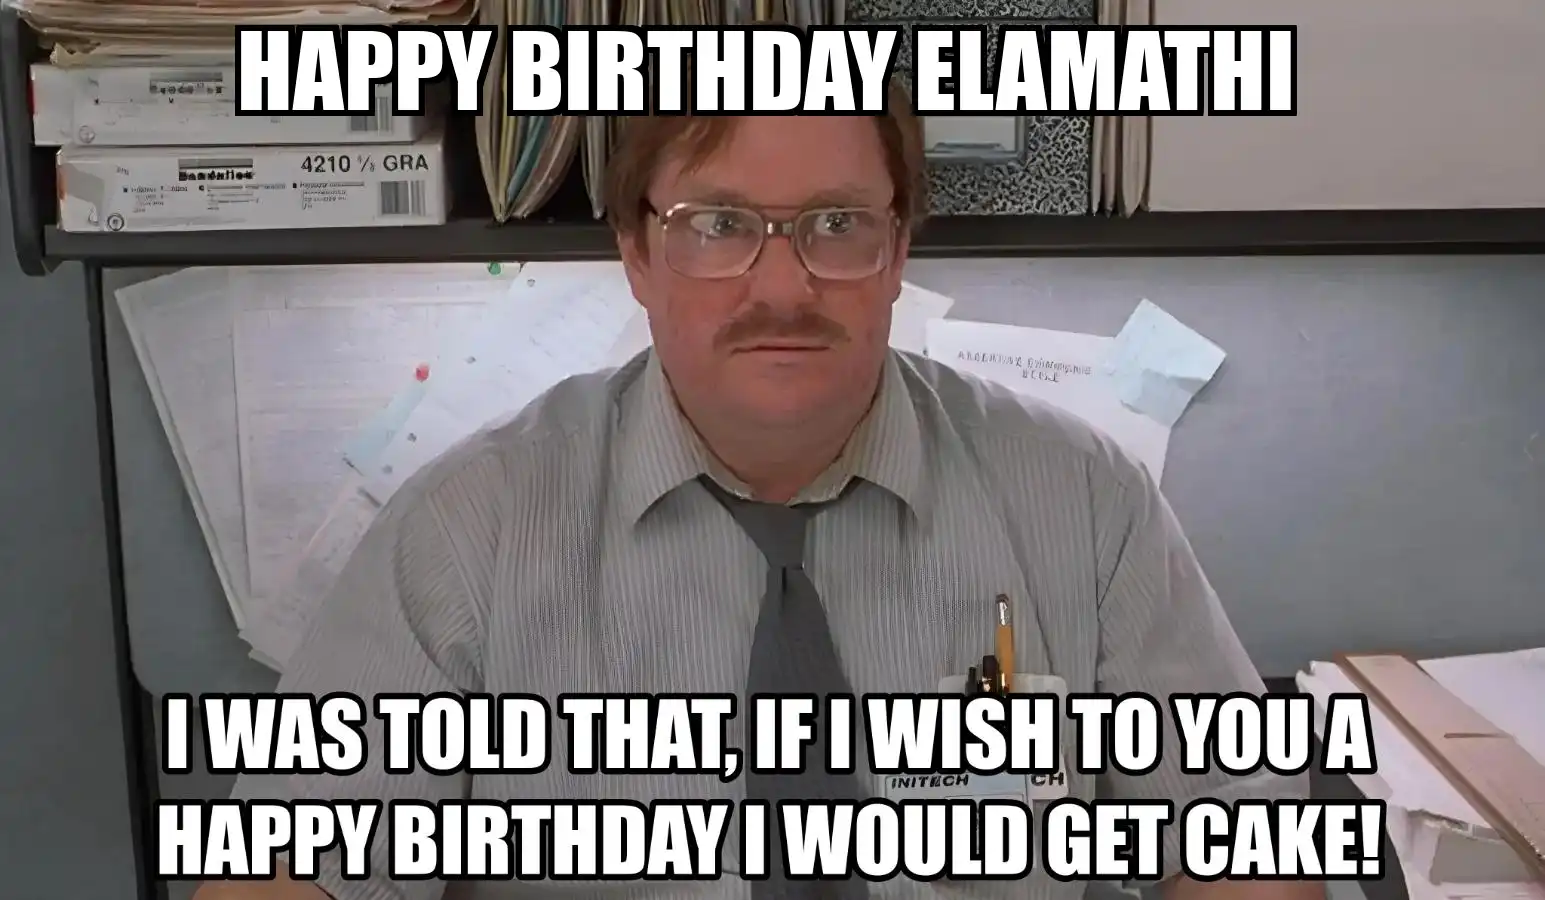 Happy Birthday Elamathi I Would Get A Cake Meme